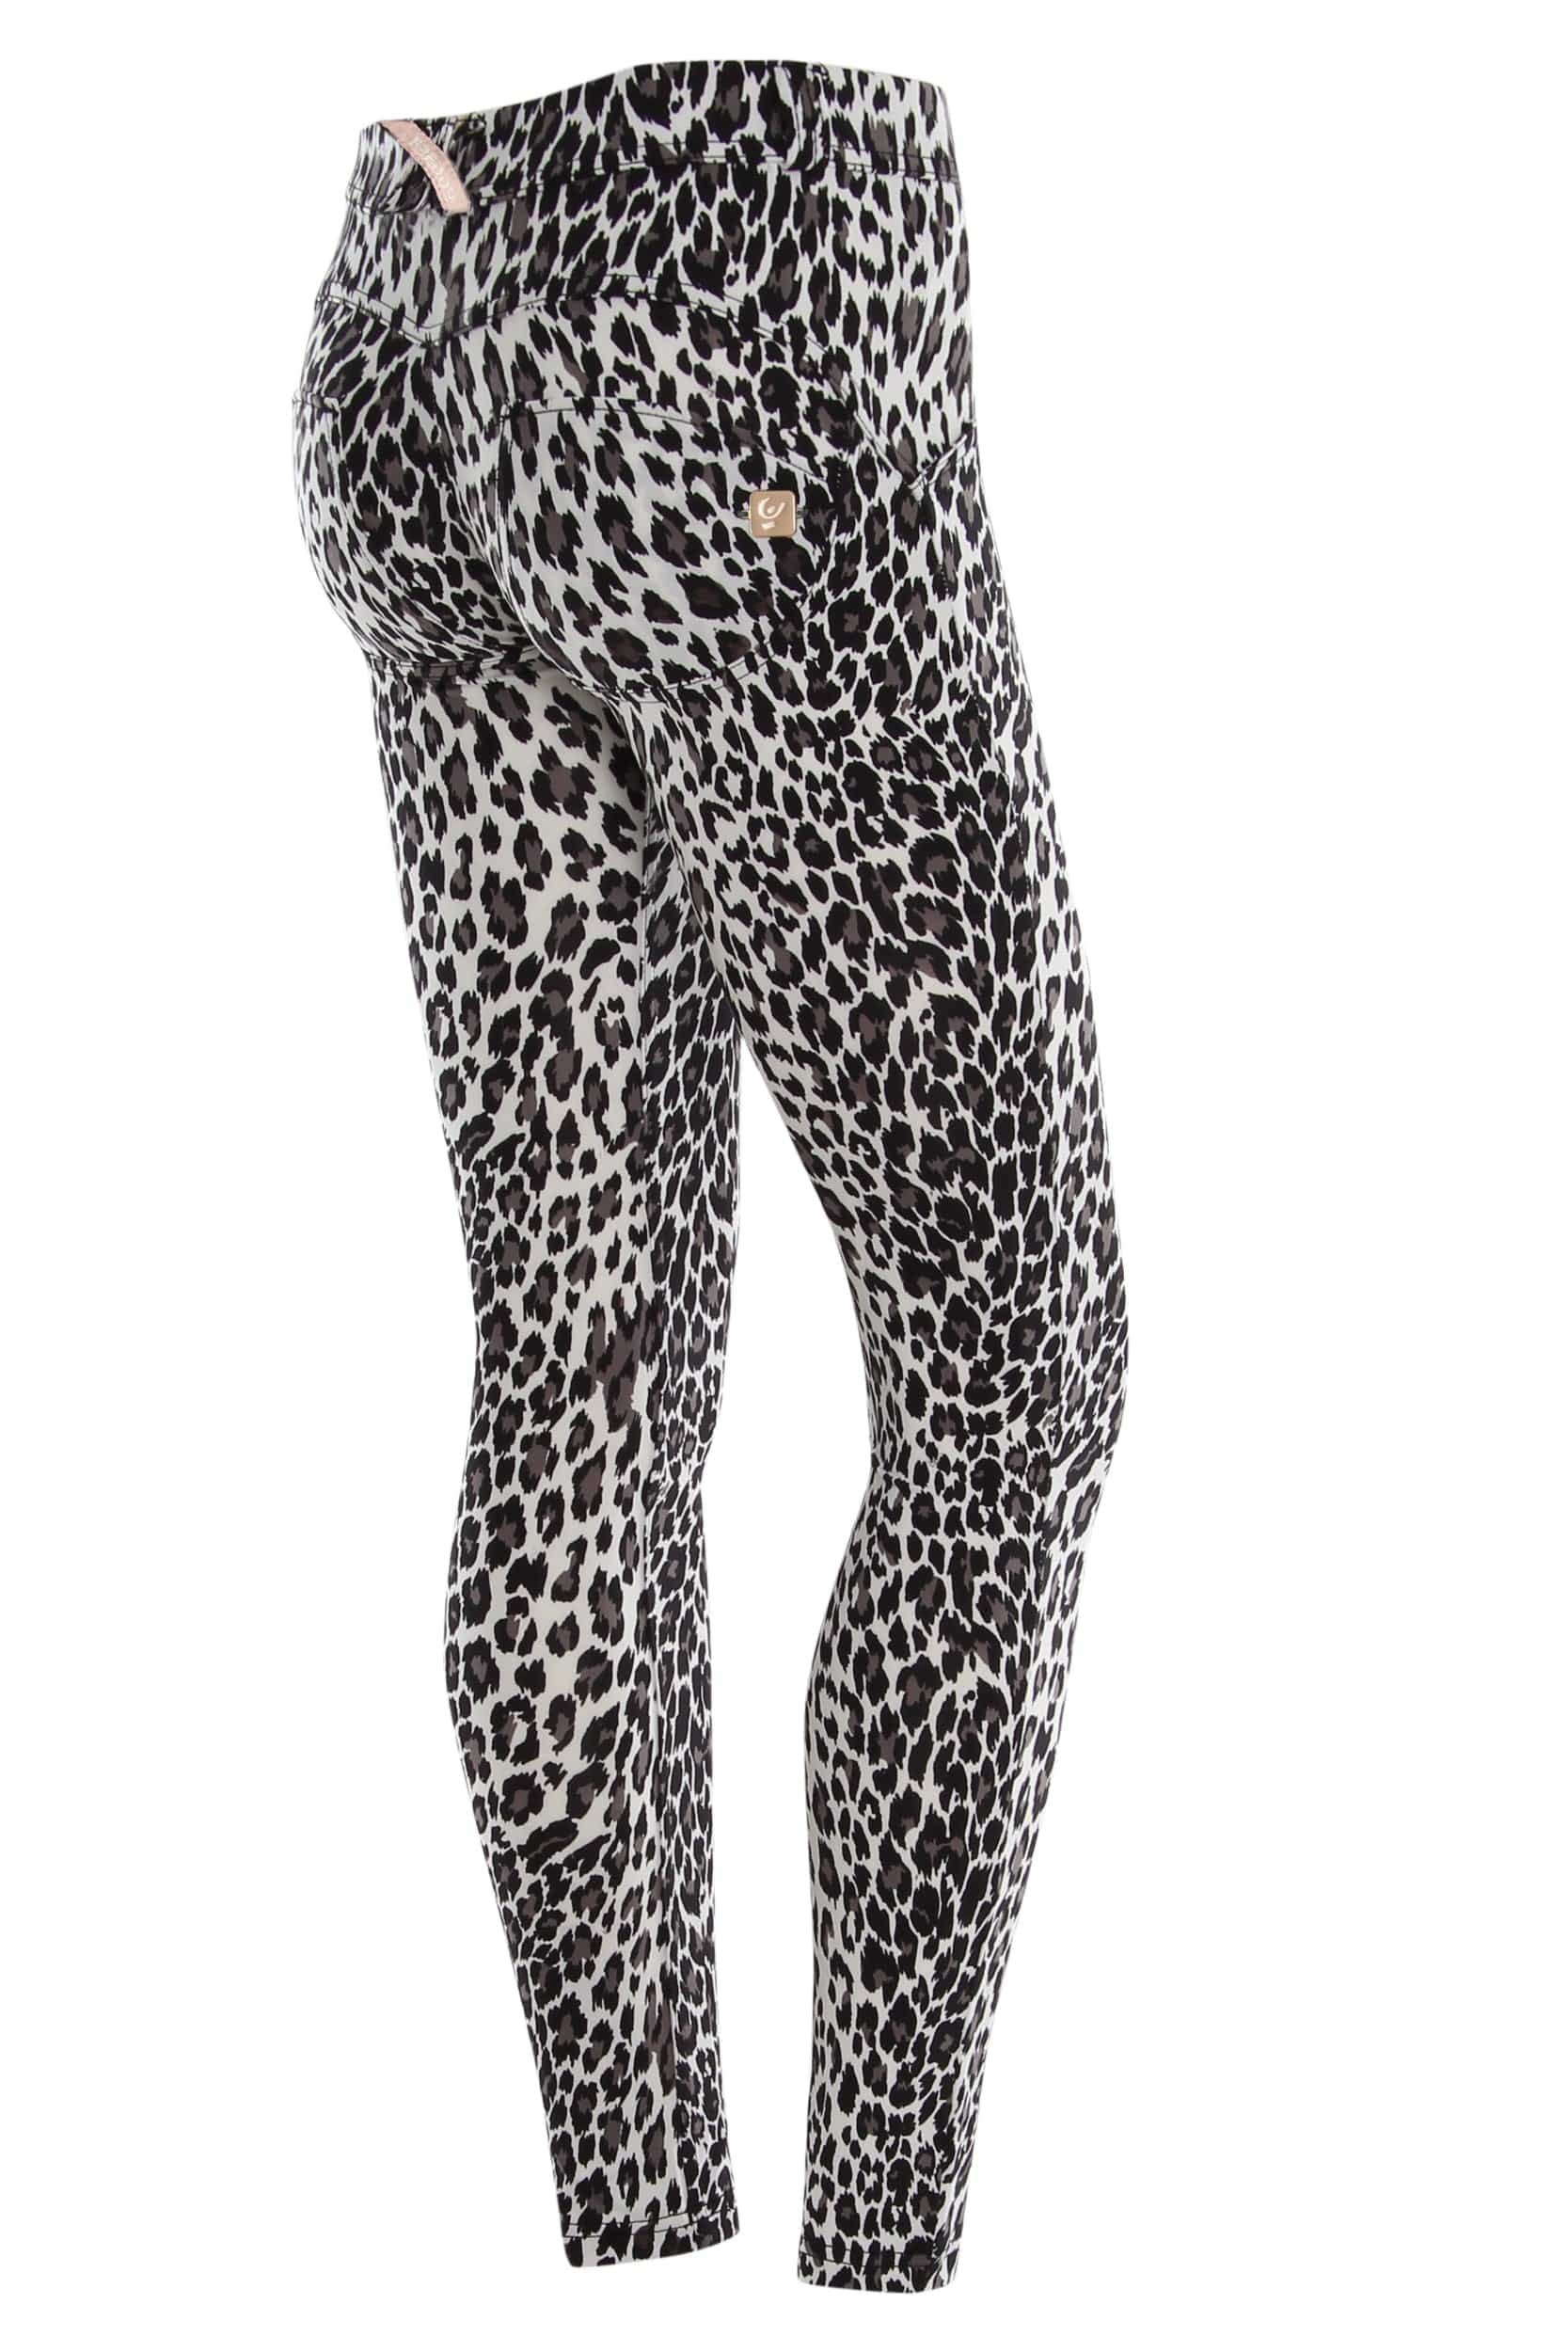 WR.UP® Diwo Skinny Leg - Regular Rise - Full Length - Leopard Animalier 1